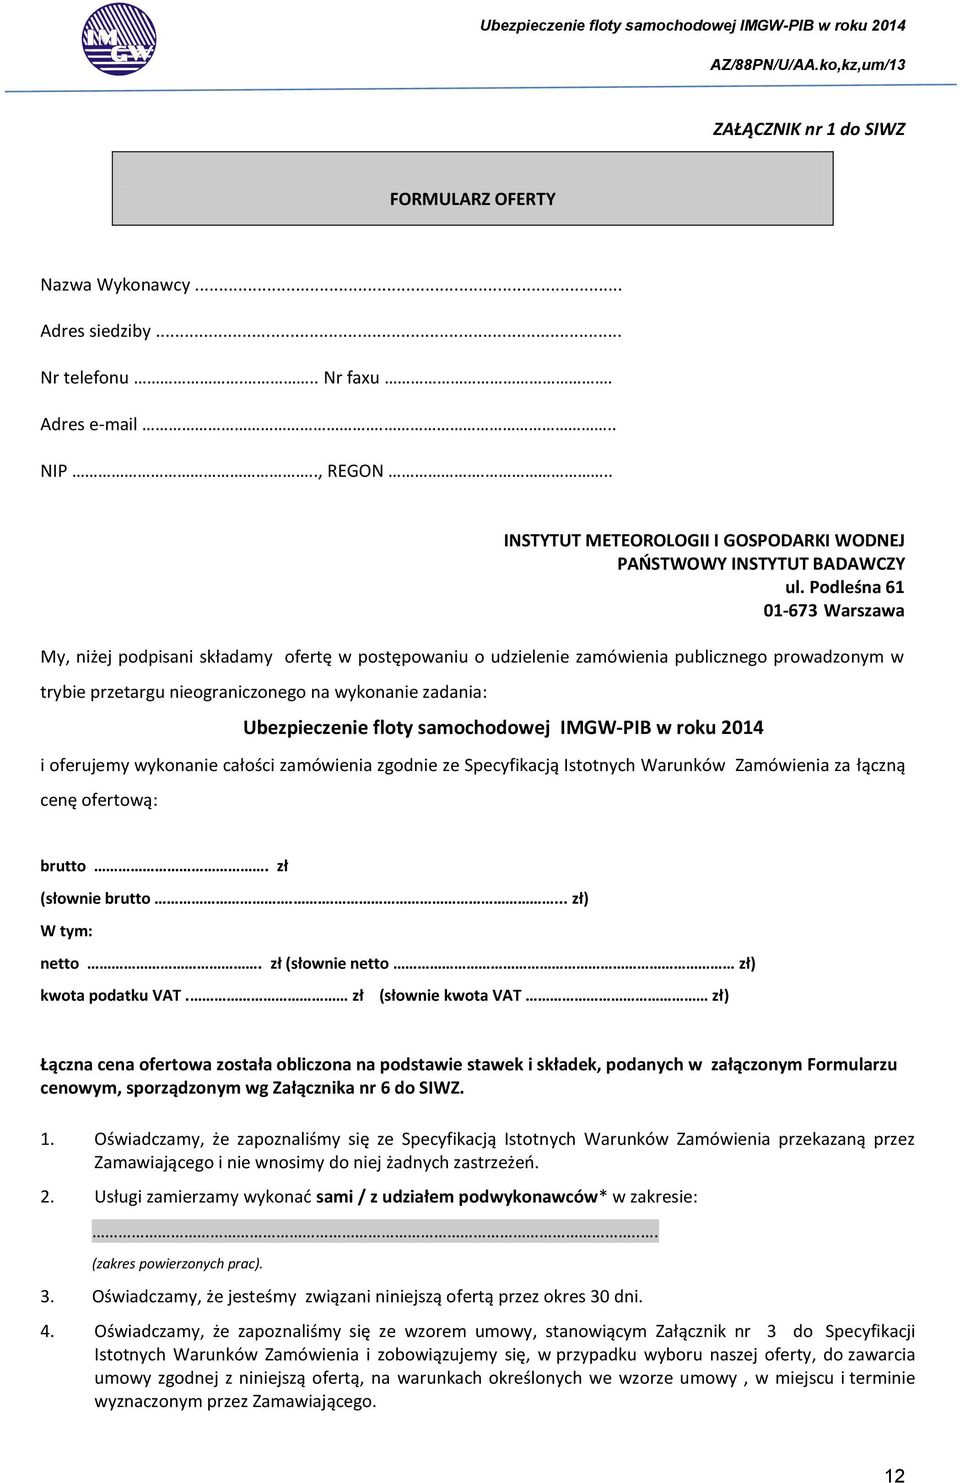 Podleśna 61 01-673 Warszawa My, niżej podpisani składamy ofertę w postępowaniu o udzielenie zamówienia publicznego prowadzonym w trybie przetargu nieograniczonego na wykonanie zadania: Ubezpieczenie